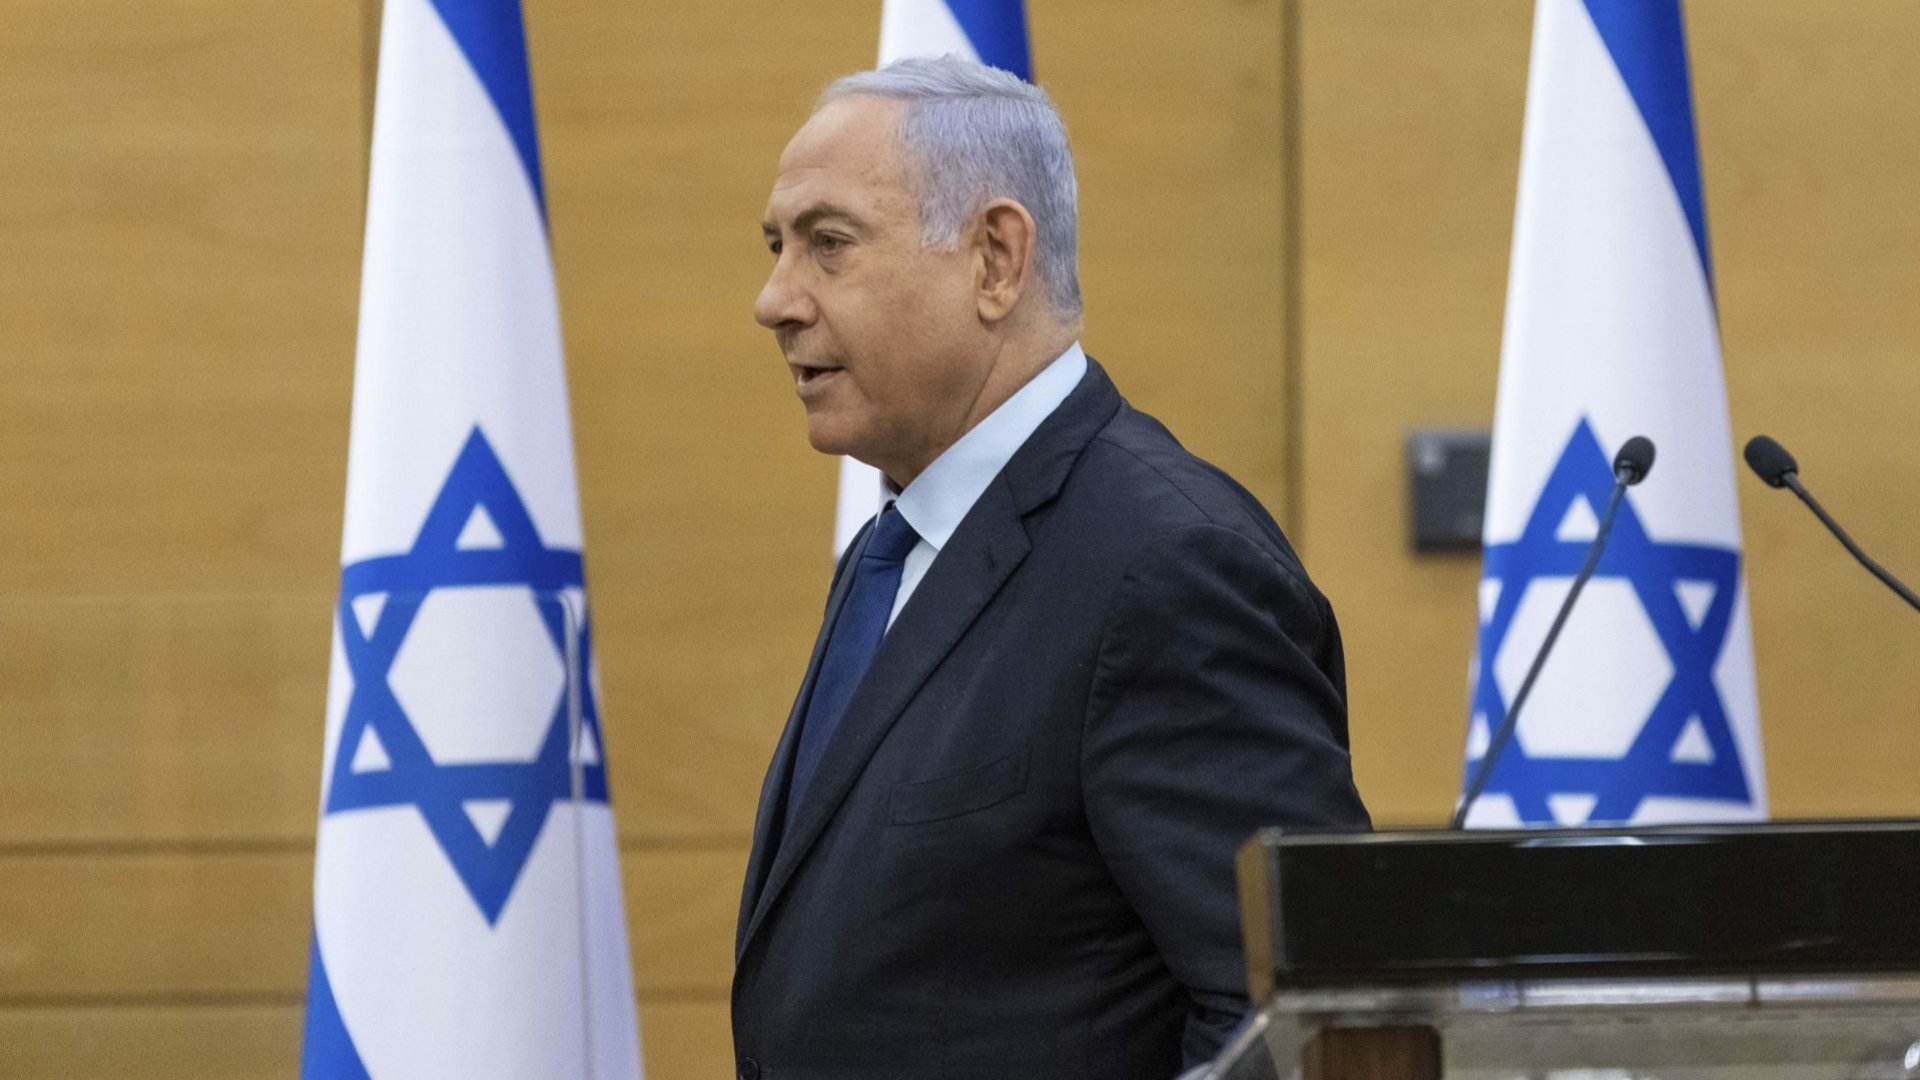 Пети рунд в омагьосания кръг на изборите в Израел - ще се върне ли Нетаняху